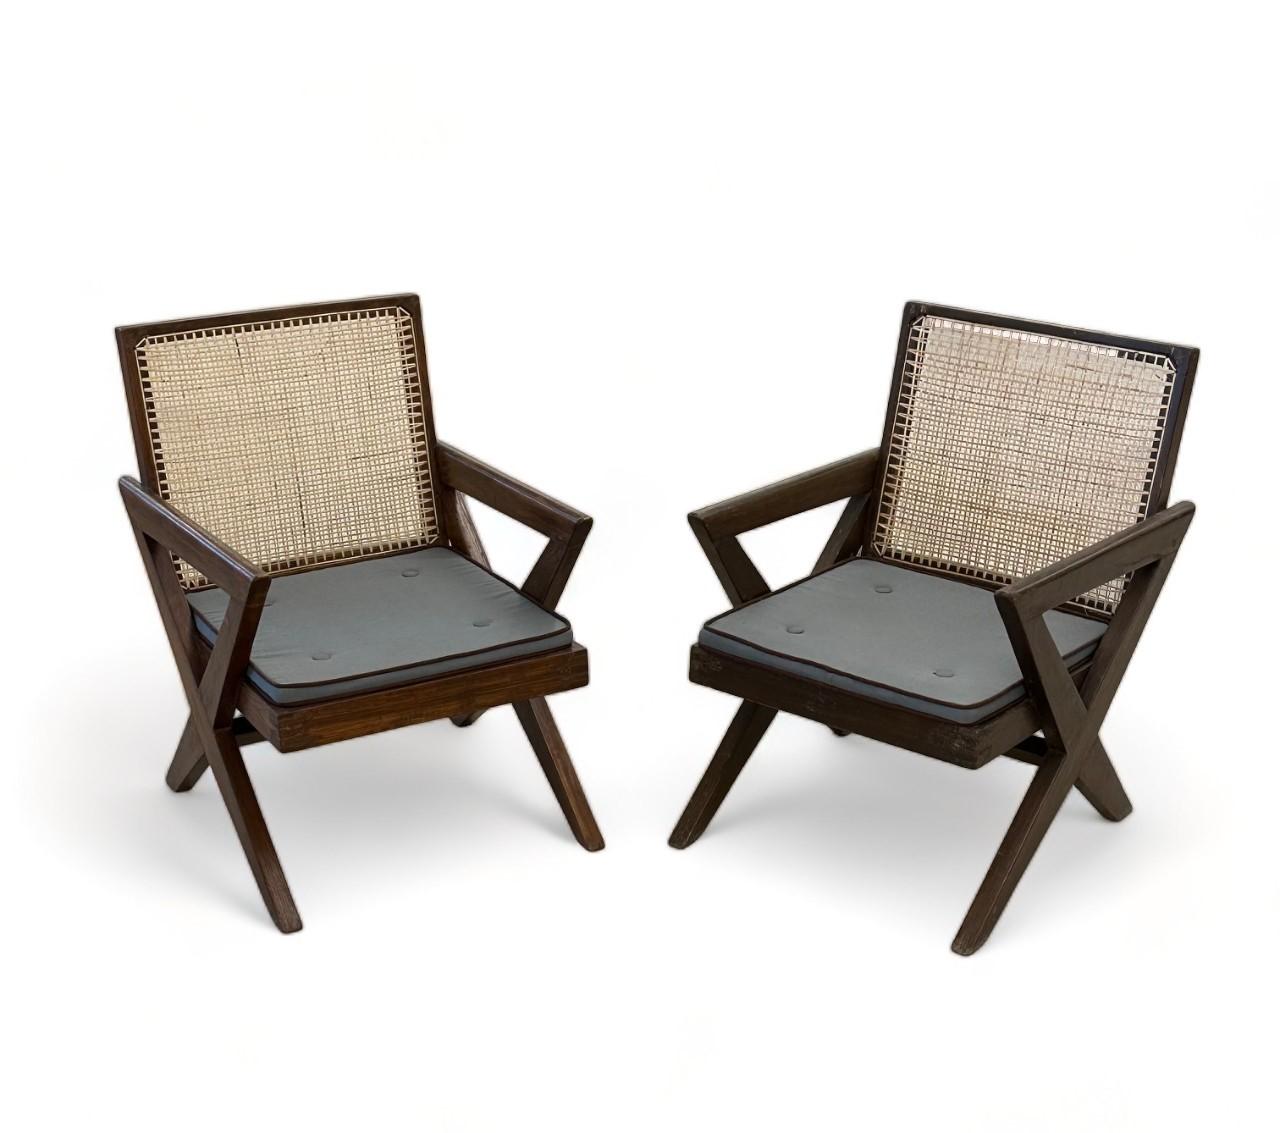 Pierre Jeanneret, Französisch Mid-Century Modern, Loungesessel, Chandigarh, 1950er Jahre

Paar der seltenen Pierre Jeanneret 'X',  bequeme Sessel. Diese Stühle wurden leicht gewaschen und poliert. Der Rohrstock wurde von Hand nachgearbeitet. Diese